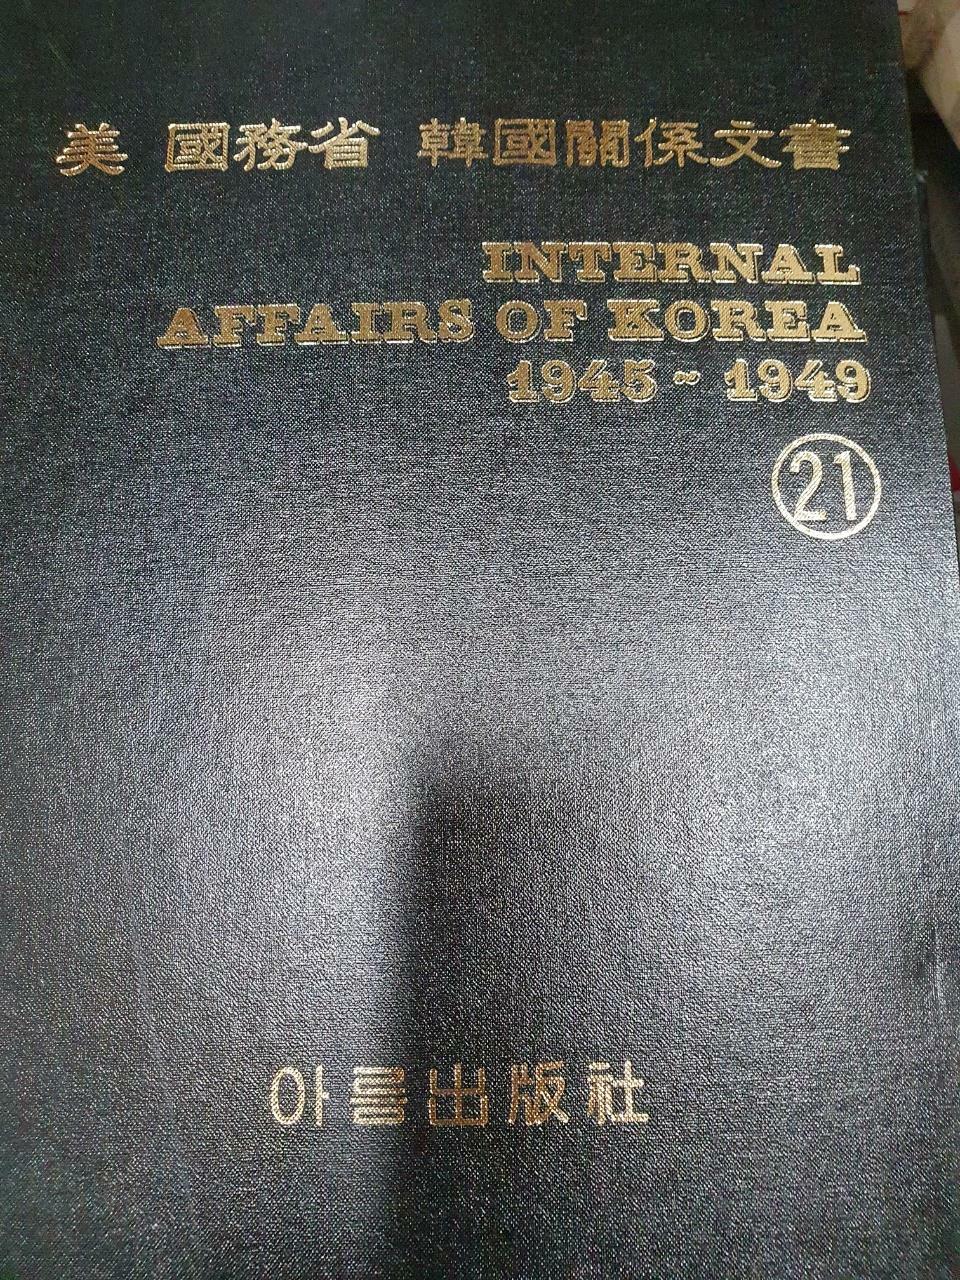 [중고] 미국무성 한국 관계문서/internal affairs of korea/1945-1949/ 제21권/아름출판사/사진확인요망/